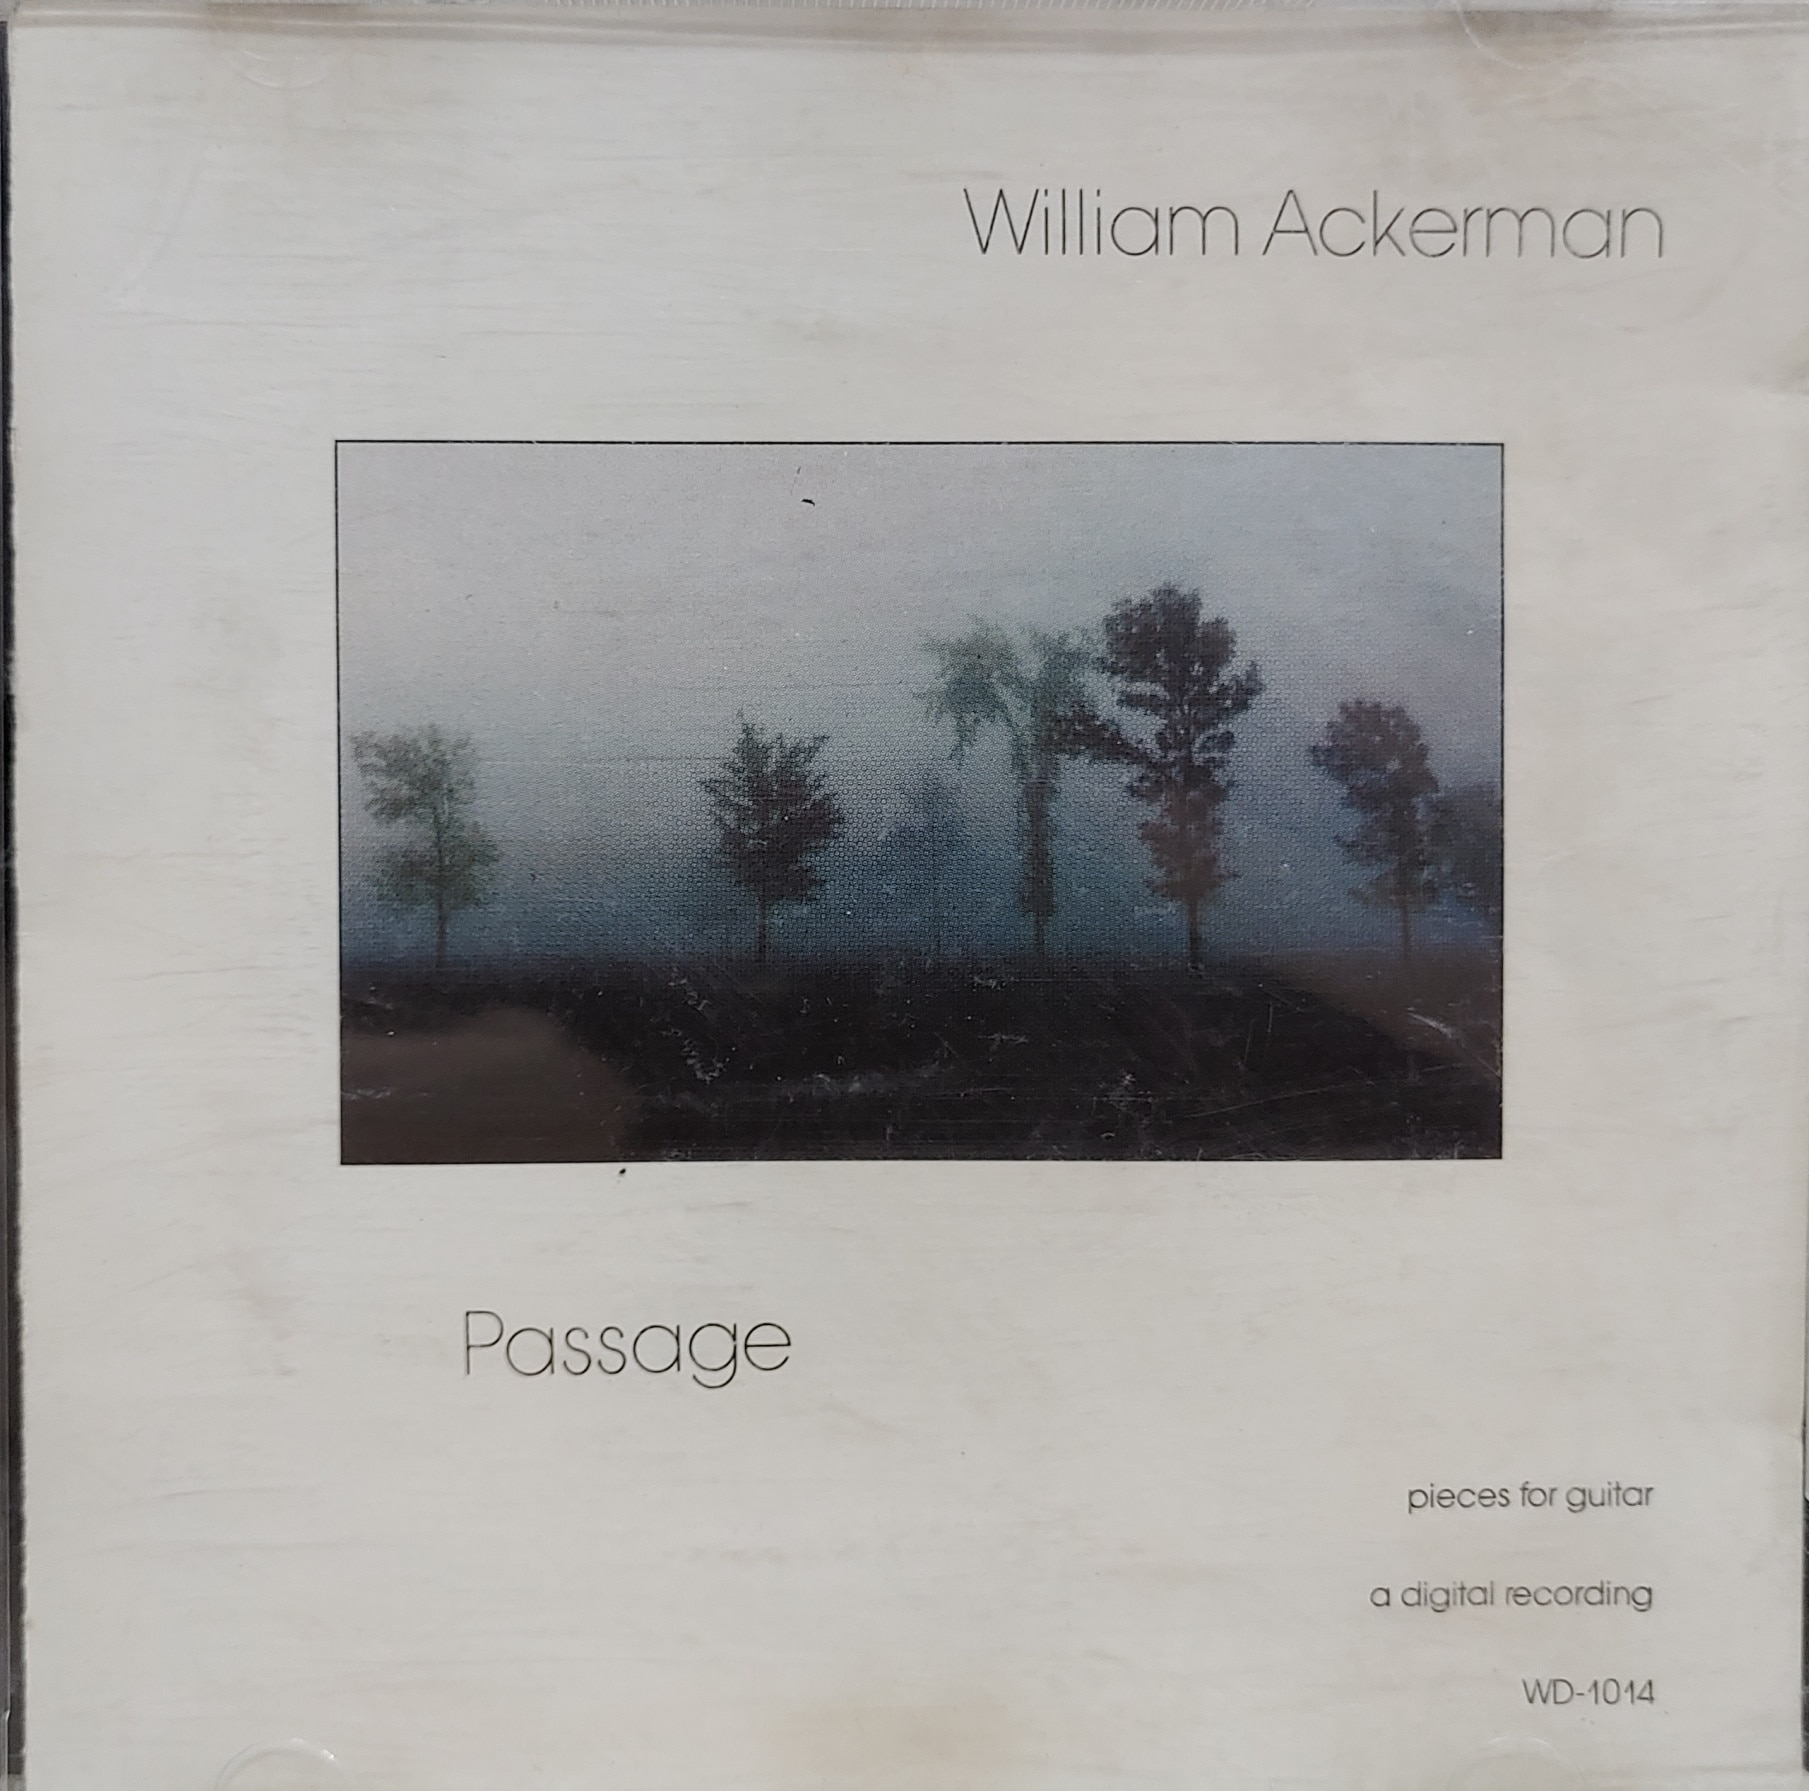 WILLIAM ACKERMAN / PASSAGE